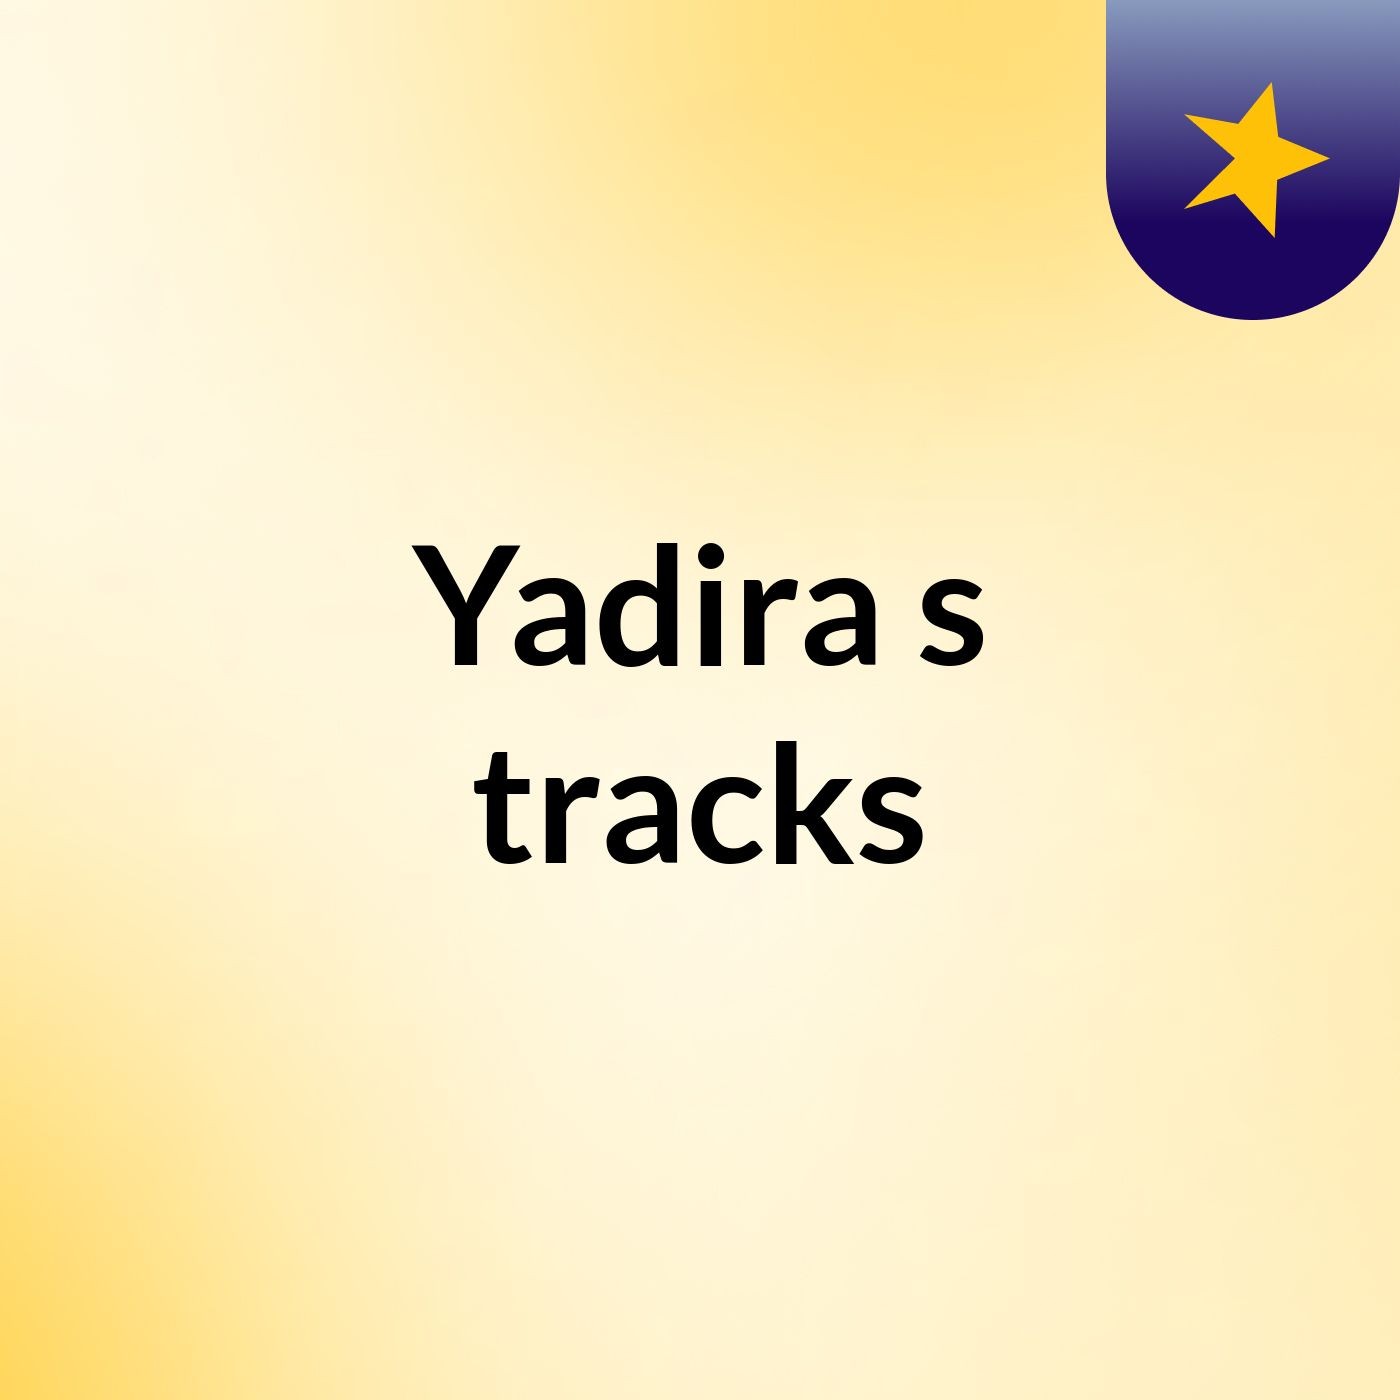 Yadira's tracks